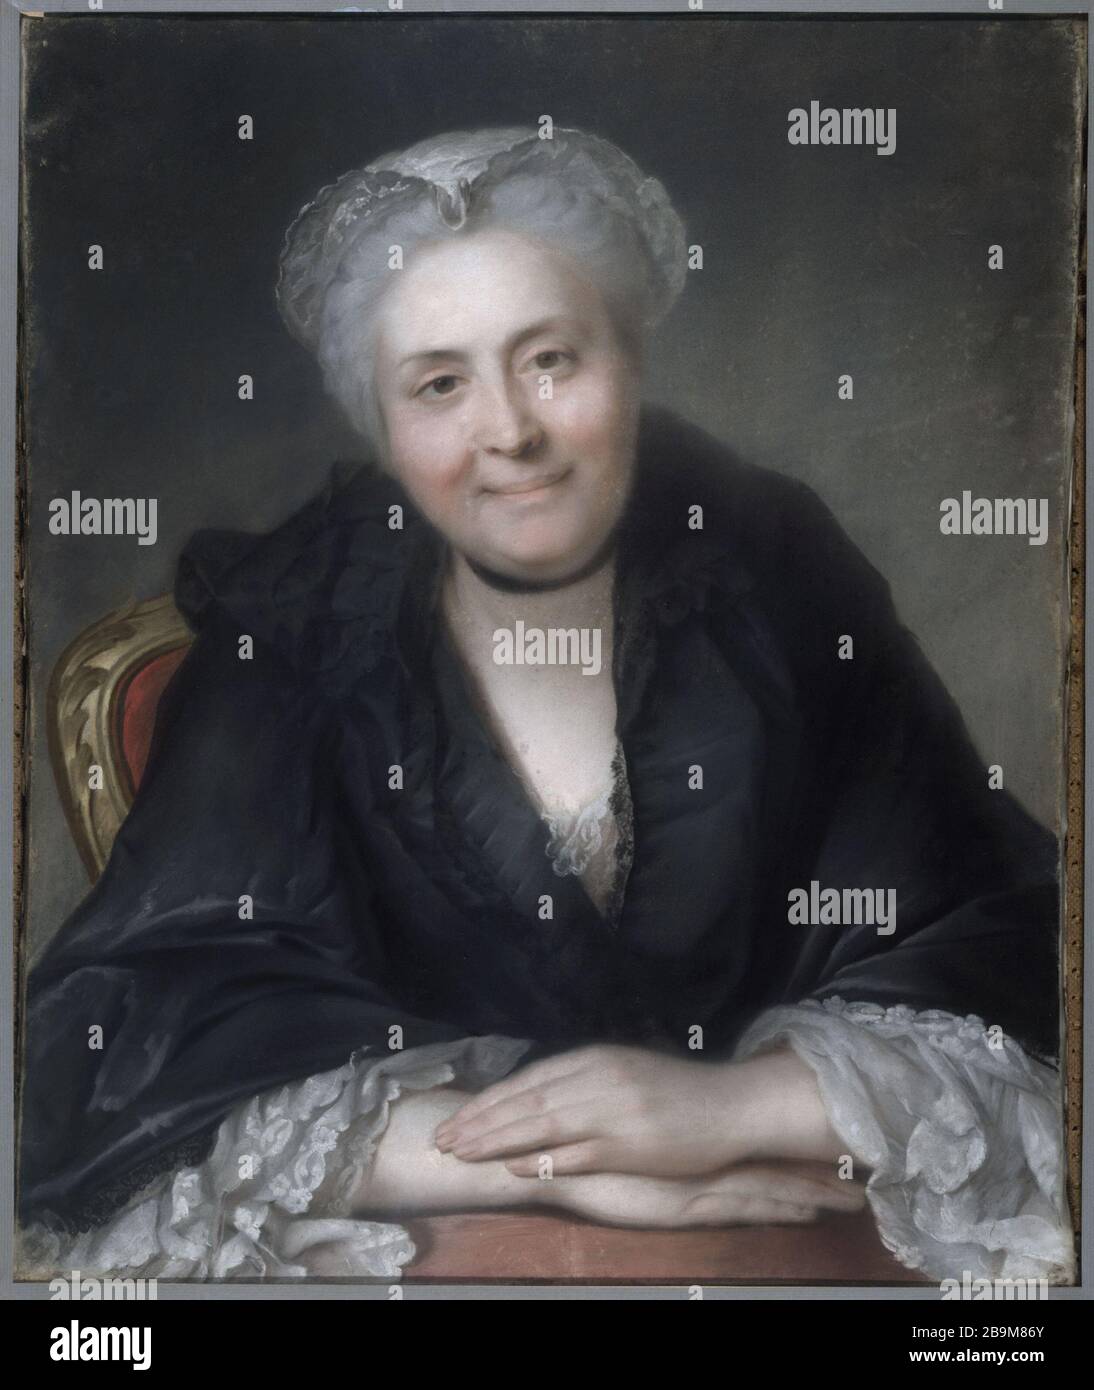 PORTRAIT OF MARIE-FRANCOISE Casimire Portrait de Marie-Françoise Casimire, comtesse de Sassenage (dite aussi marquise de Bérenger). Pastel, vers 1762-1765. Paris, musée Cognacq-Jay. Stock Photo